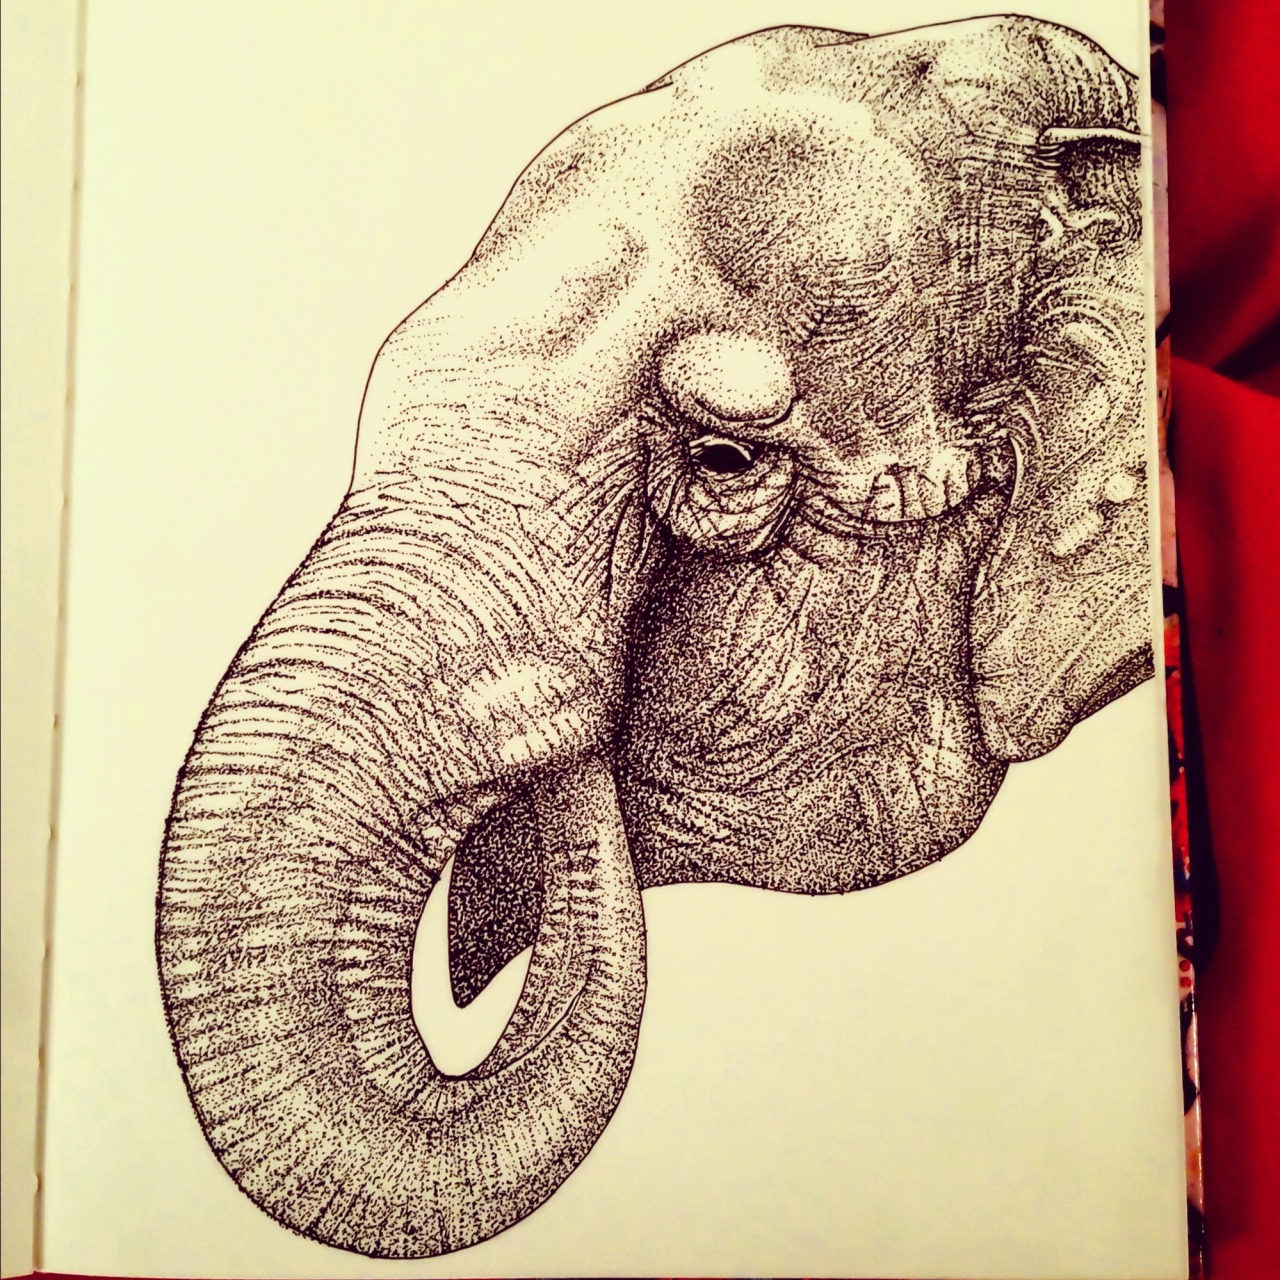 Asian elephant pen illustration. By mongo gushi.